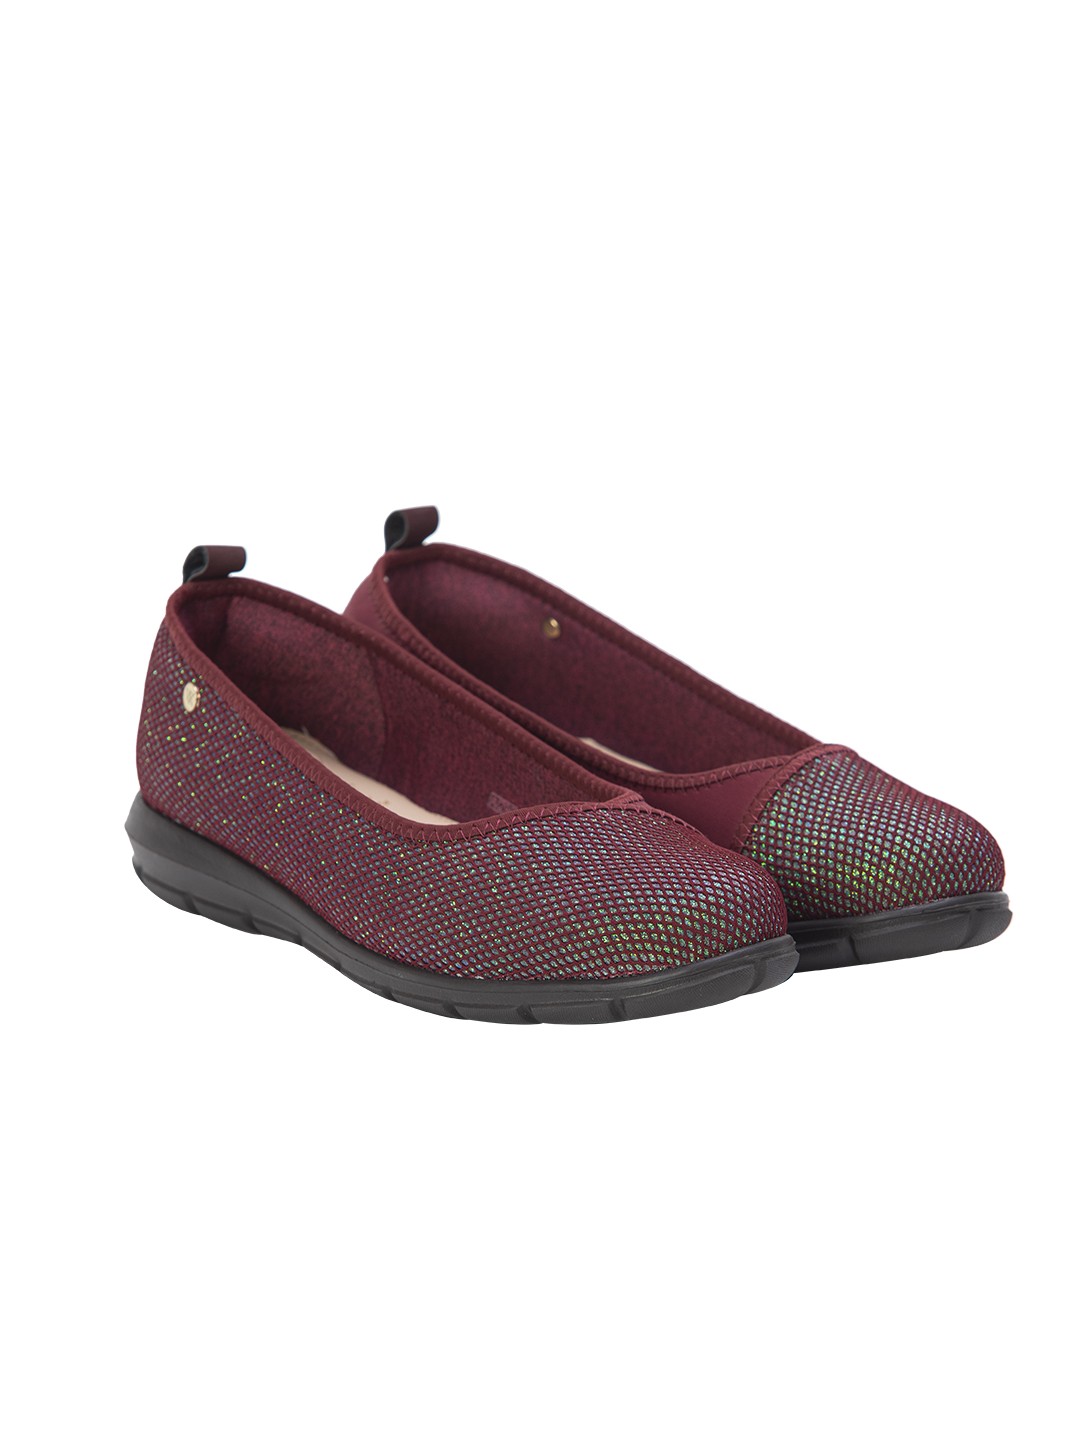 Buy Von Wellx Germany Comfort Pace Mehroon Casual Shoes Online in Meerut